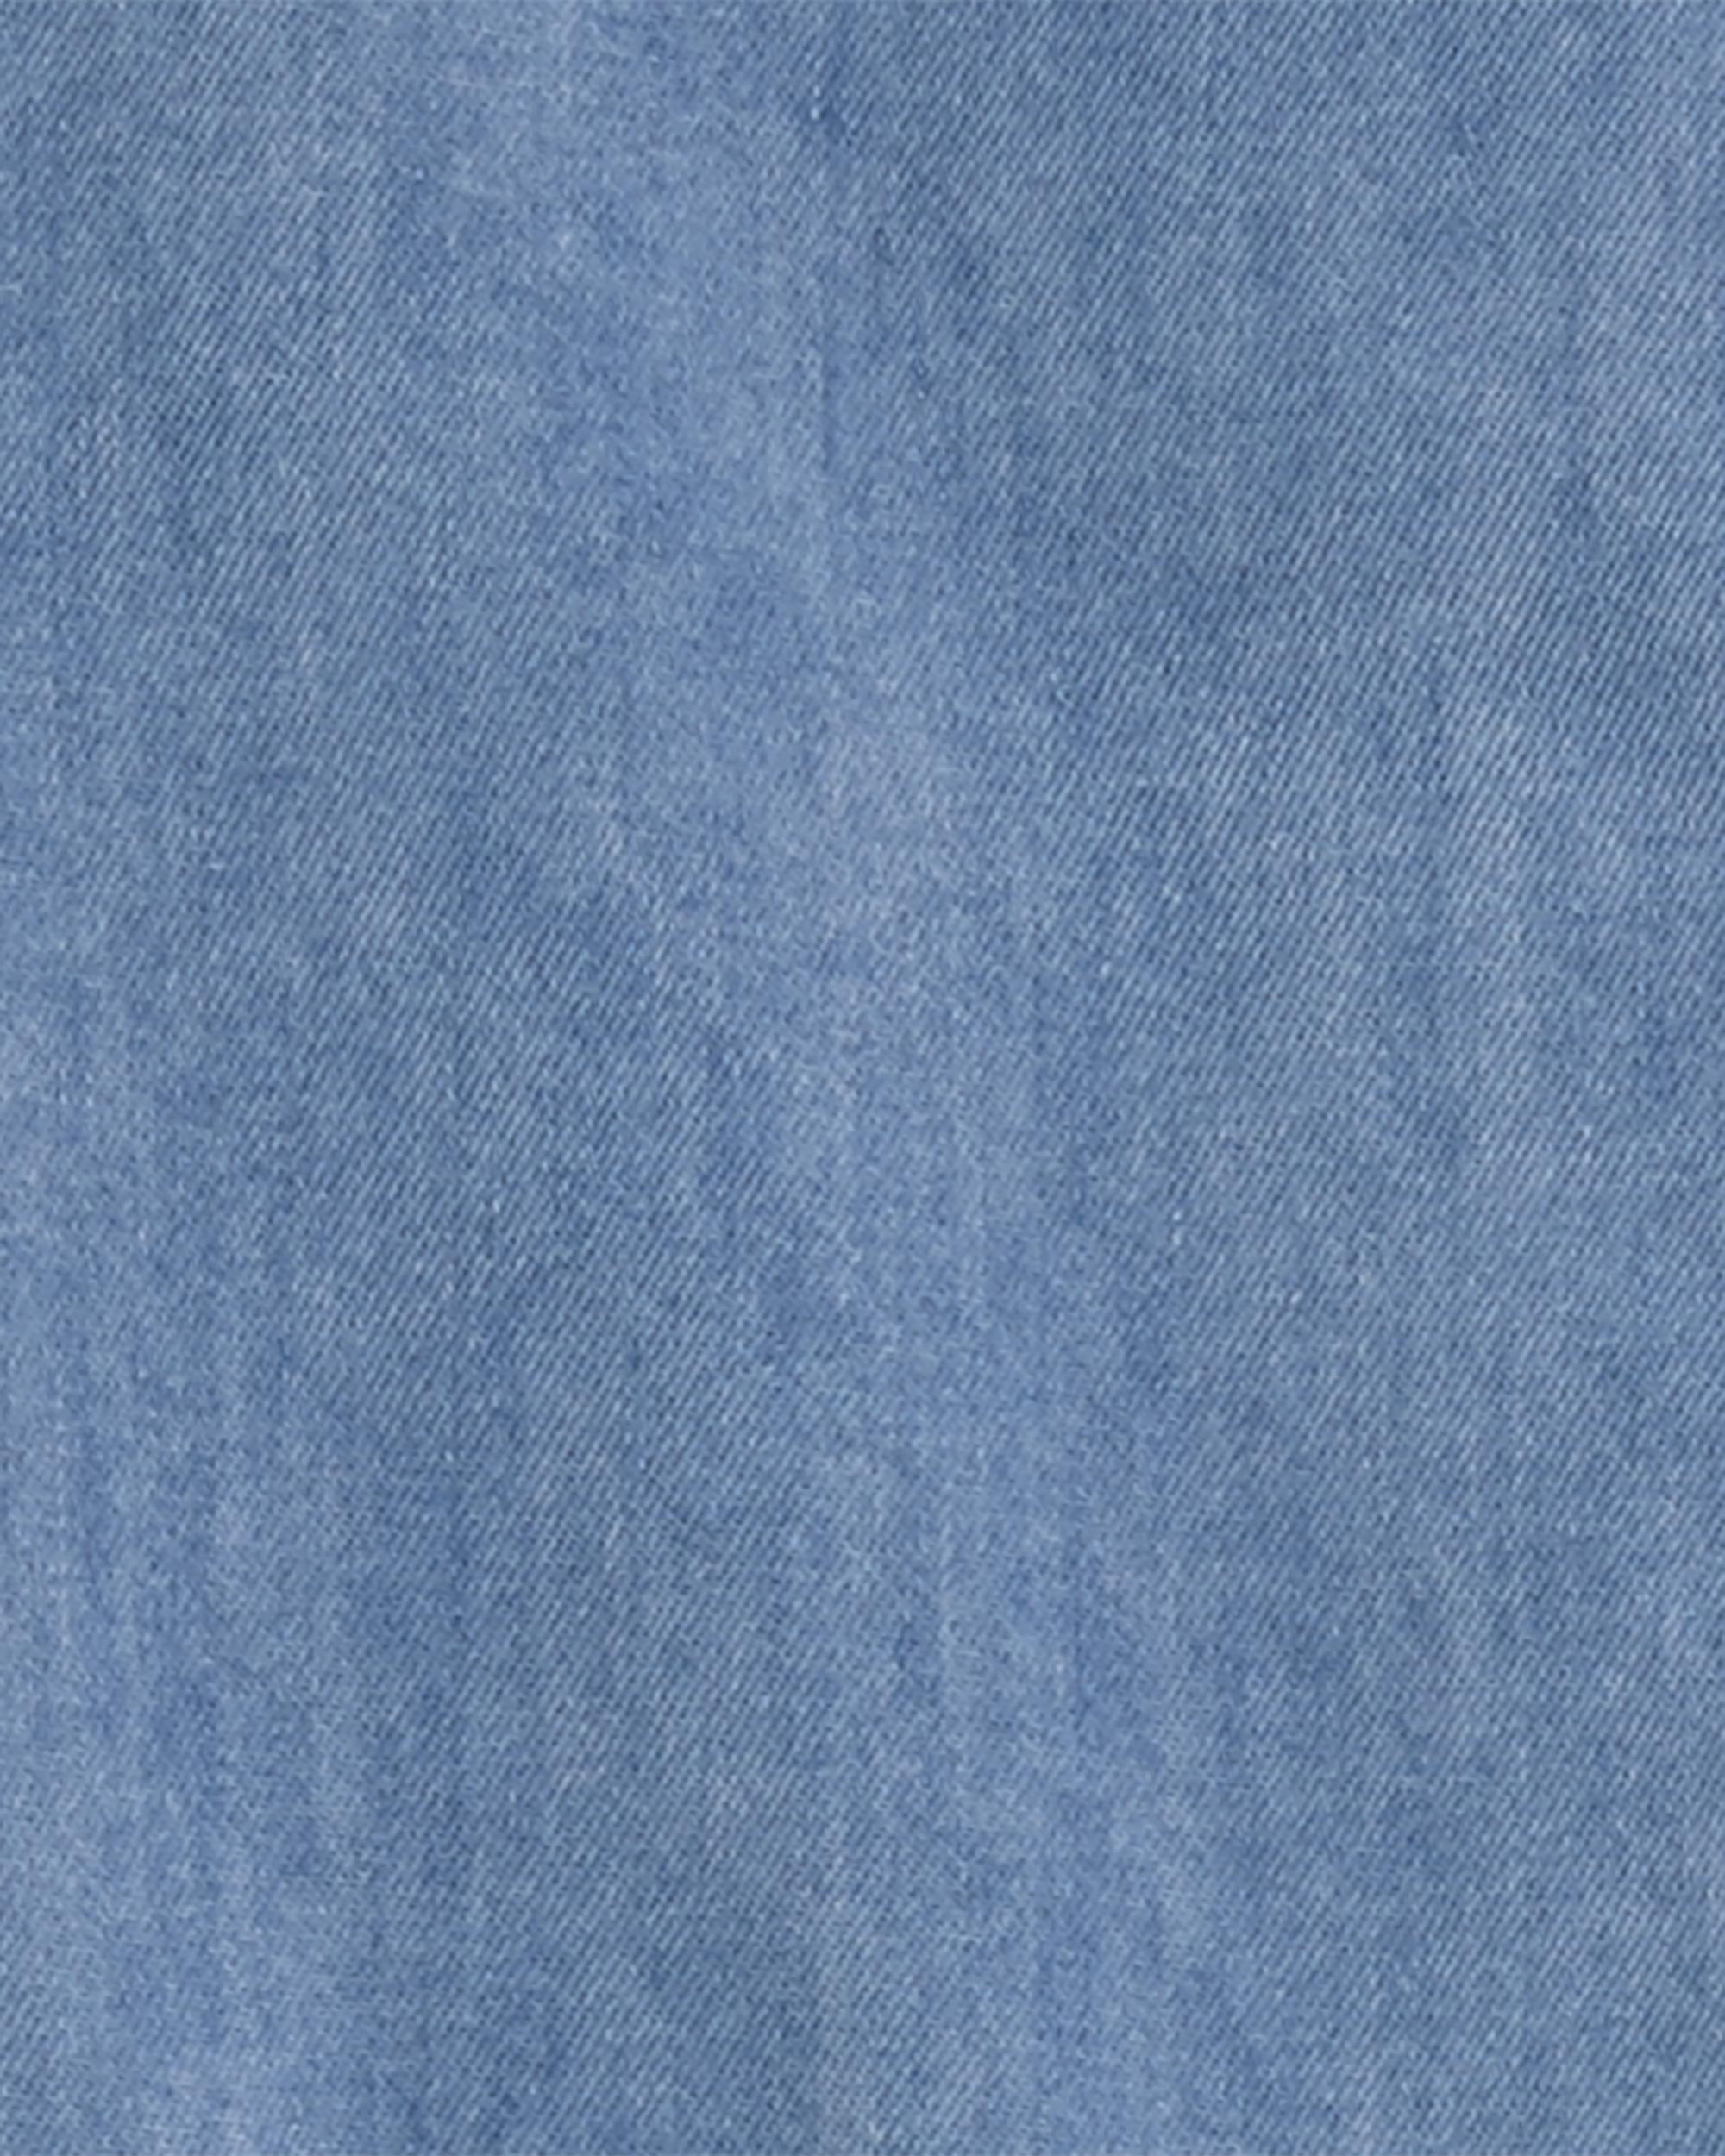 مانتو سارافونی جینز کاغذی دخترانه 29373 سایز 3 ماه تا 5 سال مارک Carters